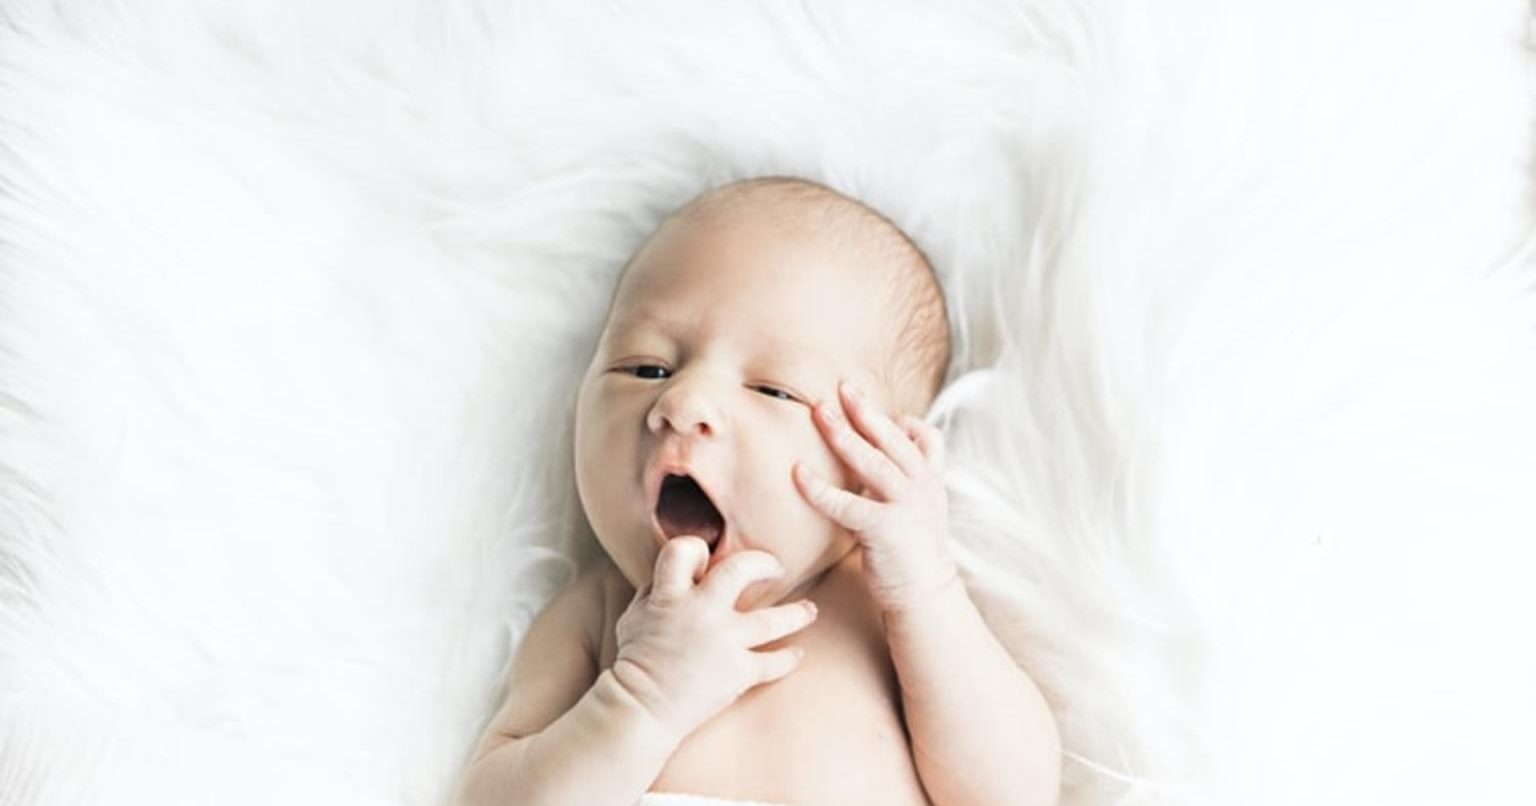 1000以上 しゃっくり 赤ちゃん 毎日 あなたのための赤ちゃんの画像